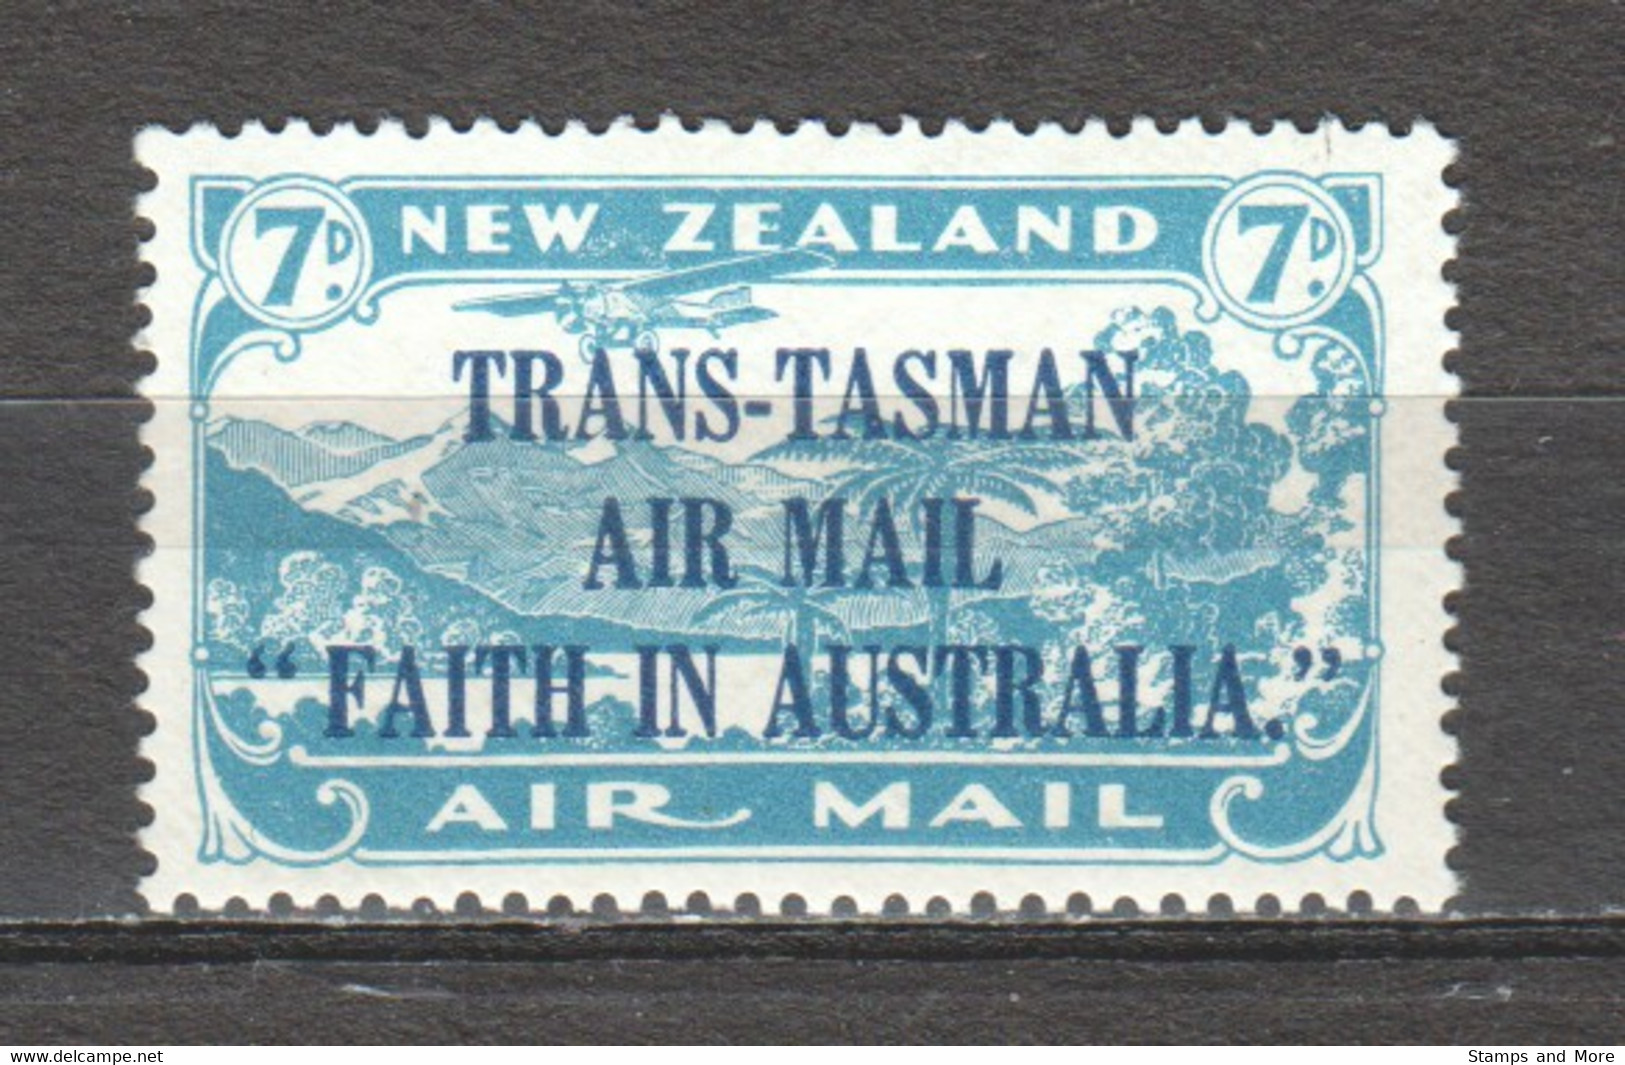 New Zealand 1934 Mi 187 MNH AIRPLANE - Luchtpost